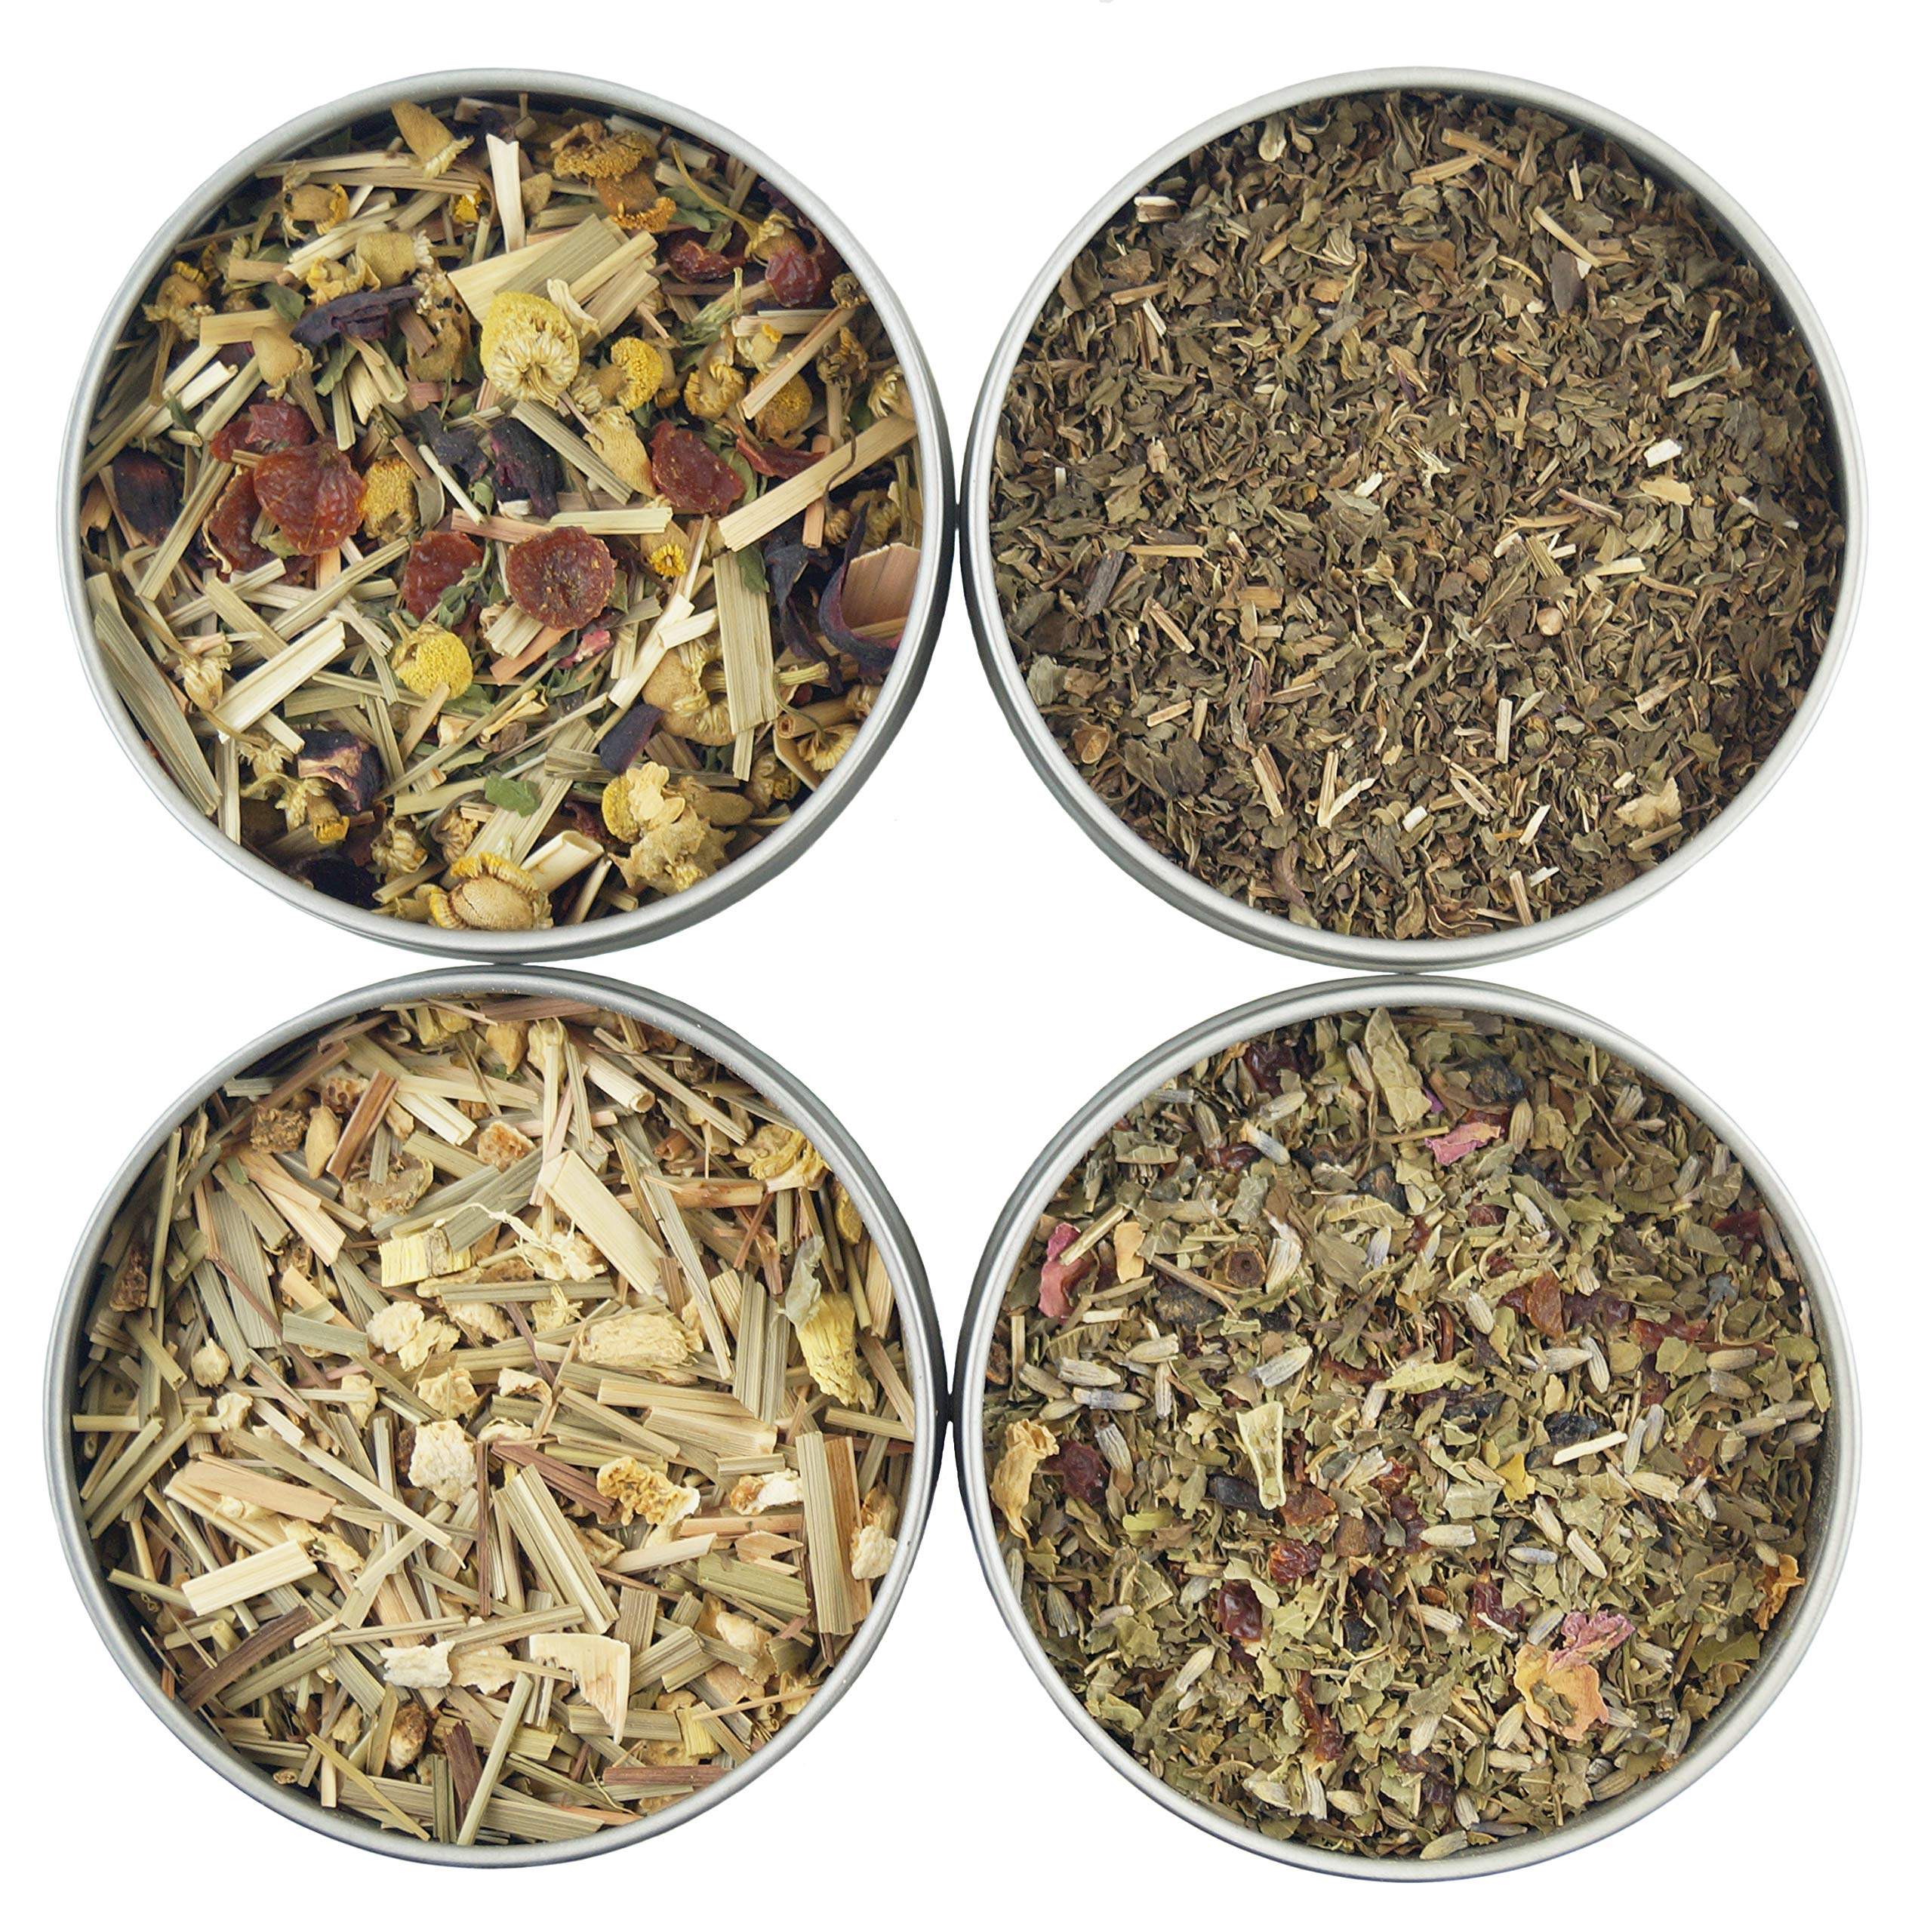 Heavenly Tea Leaves Organic Sleep Loose Leaf Herbal Tea Sampler Set, 4 Assorted Naturally Caffeine-Free Tisanes (Approx. 80 Servings)